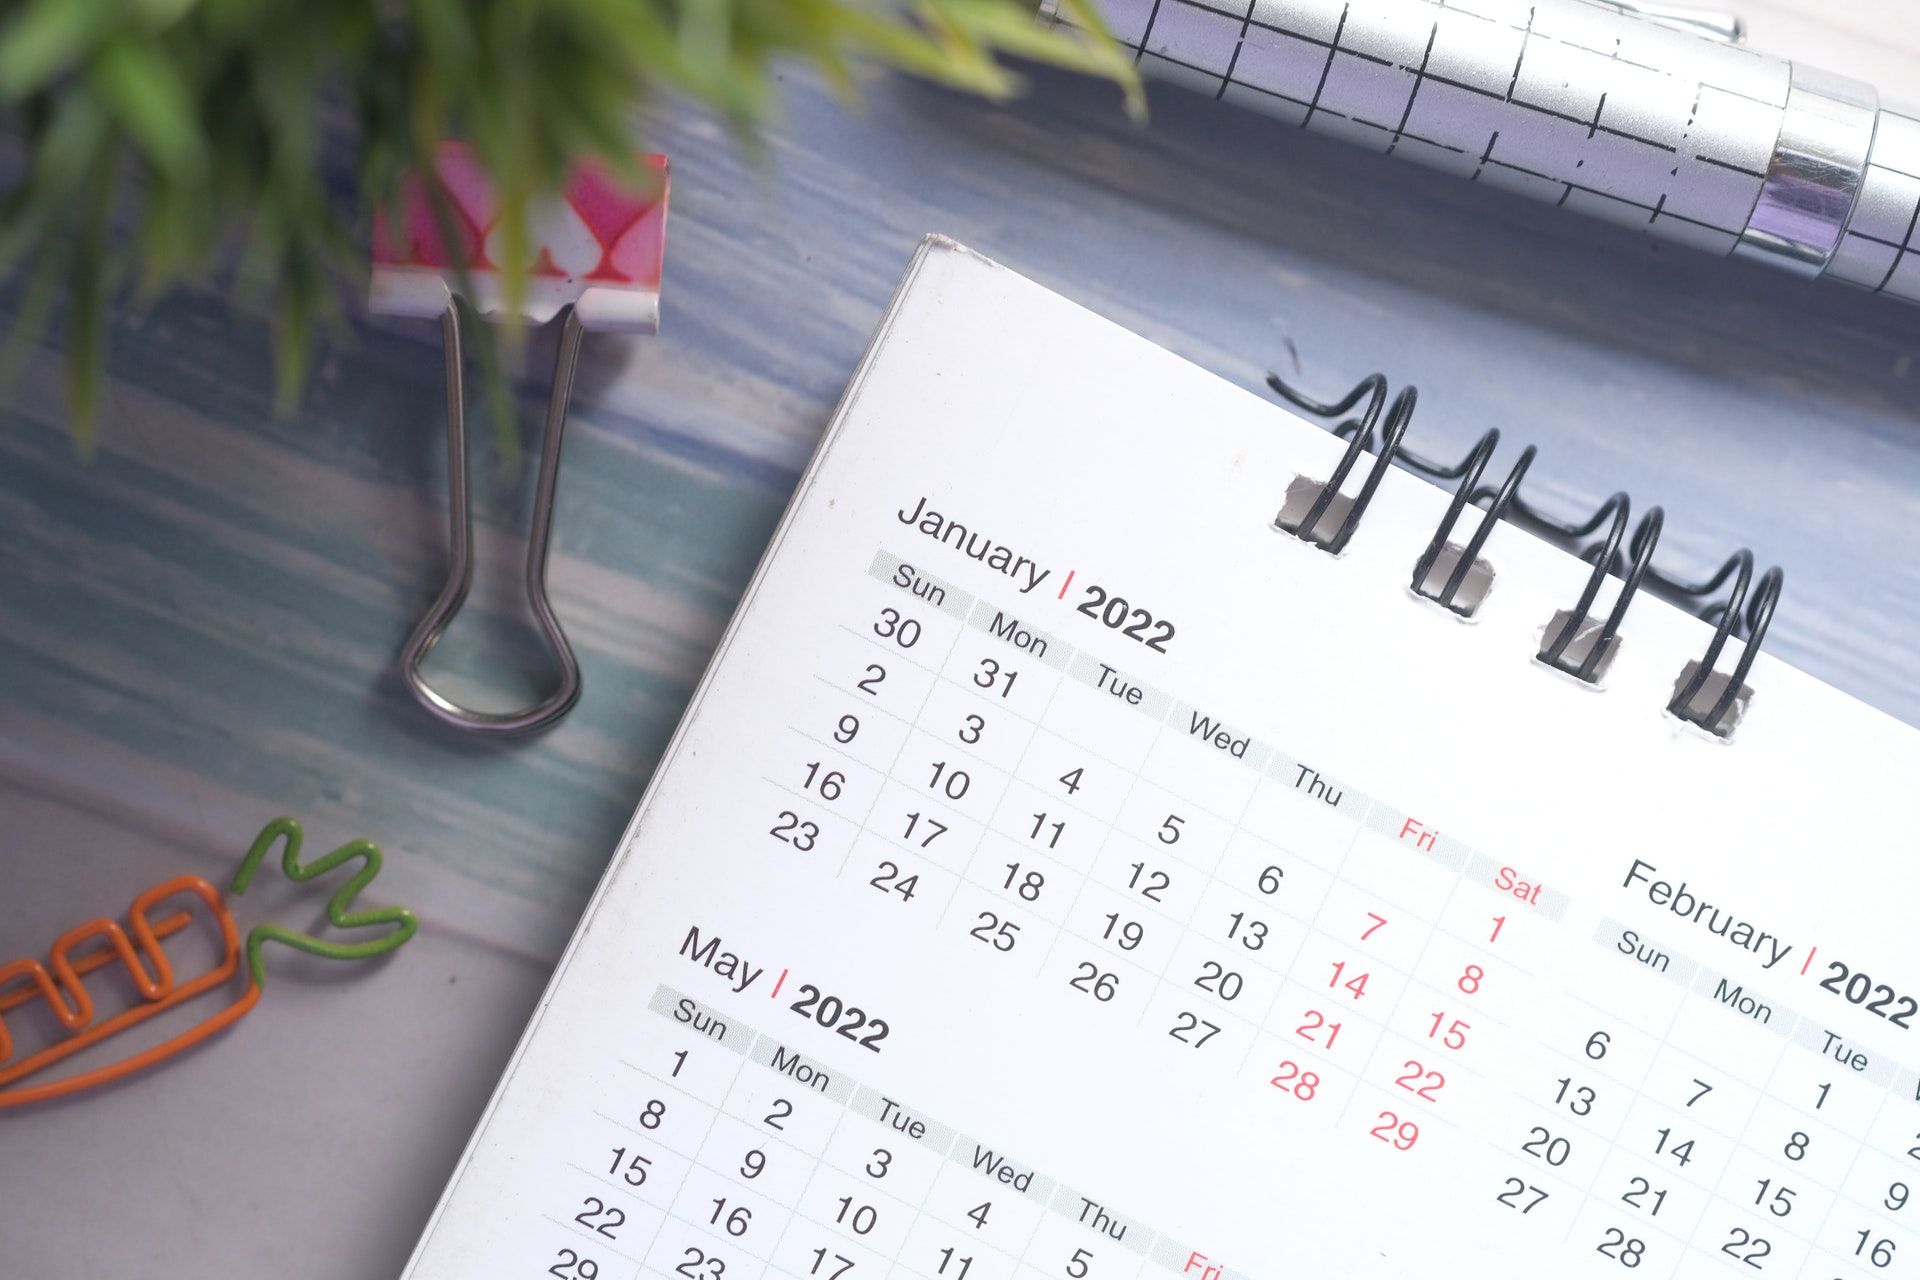 Understanding Calendars and Scheduling